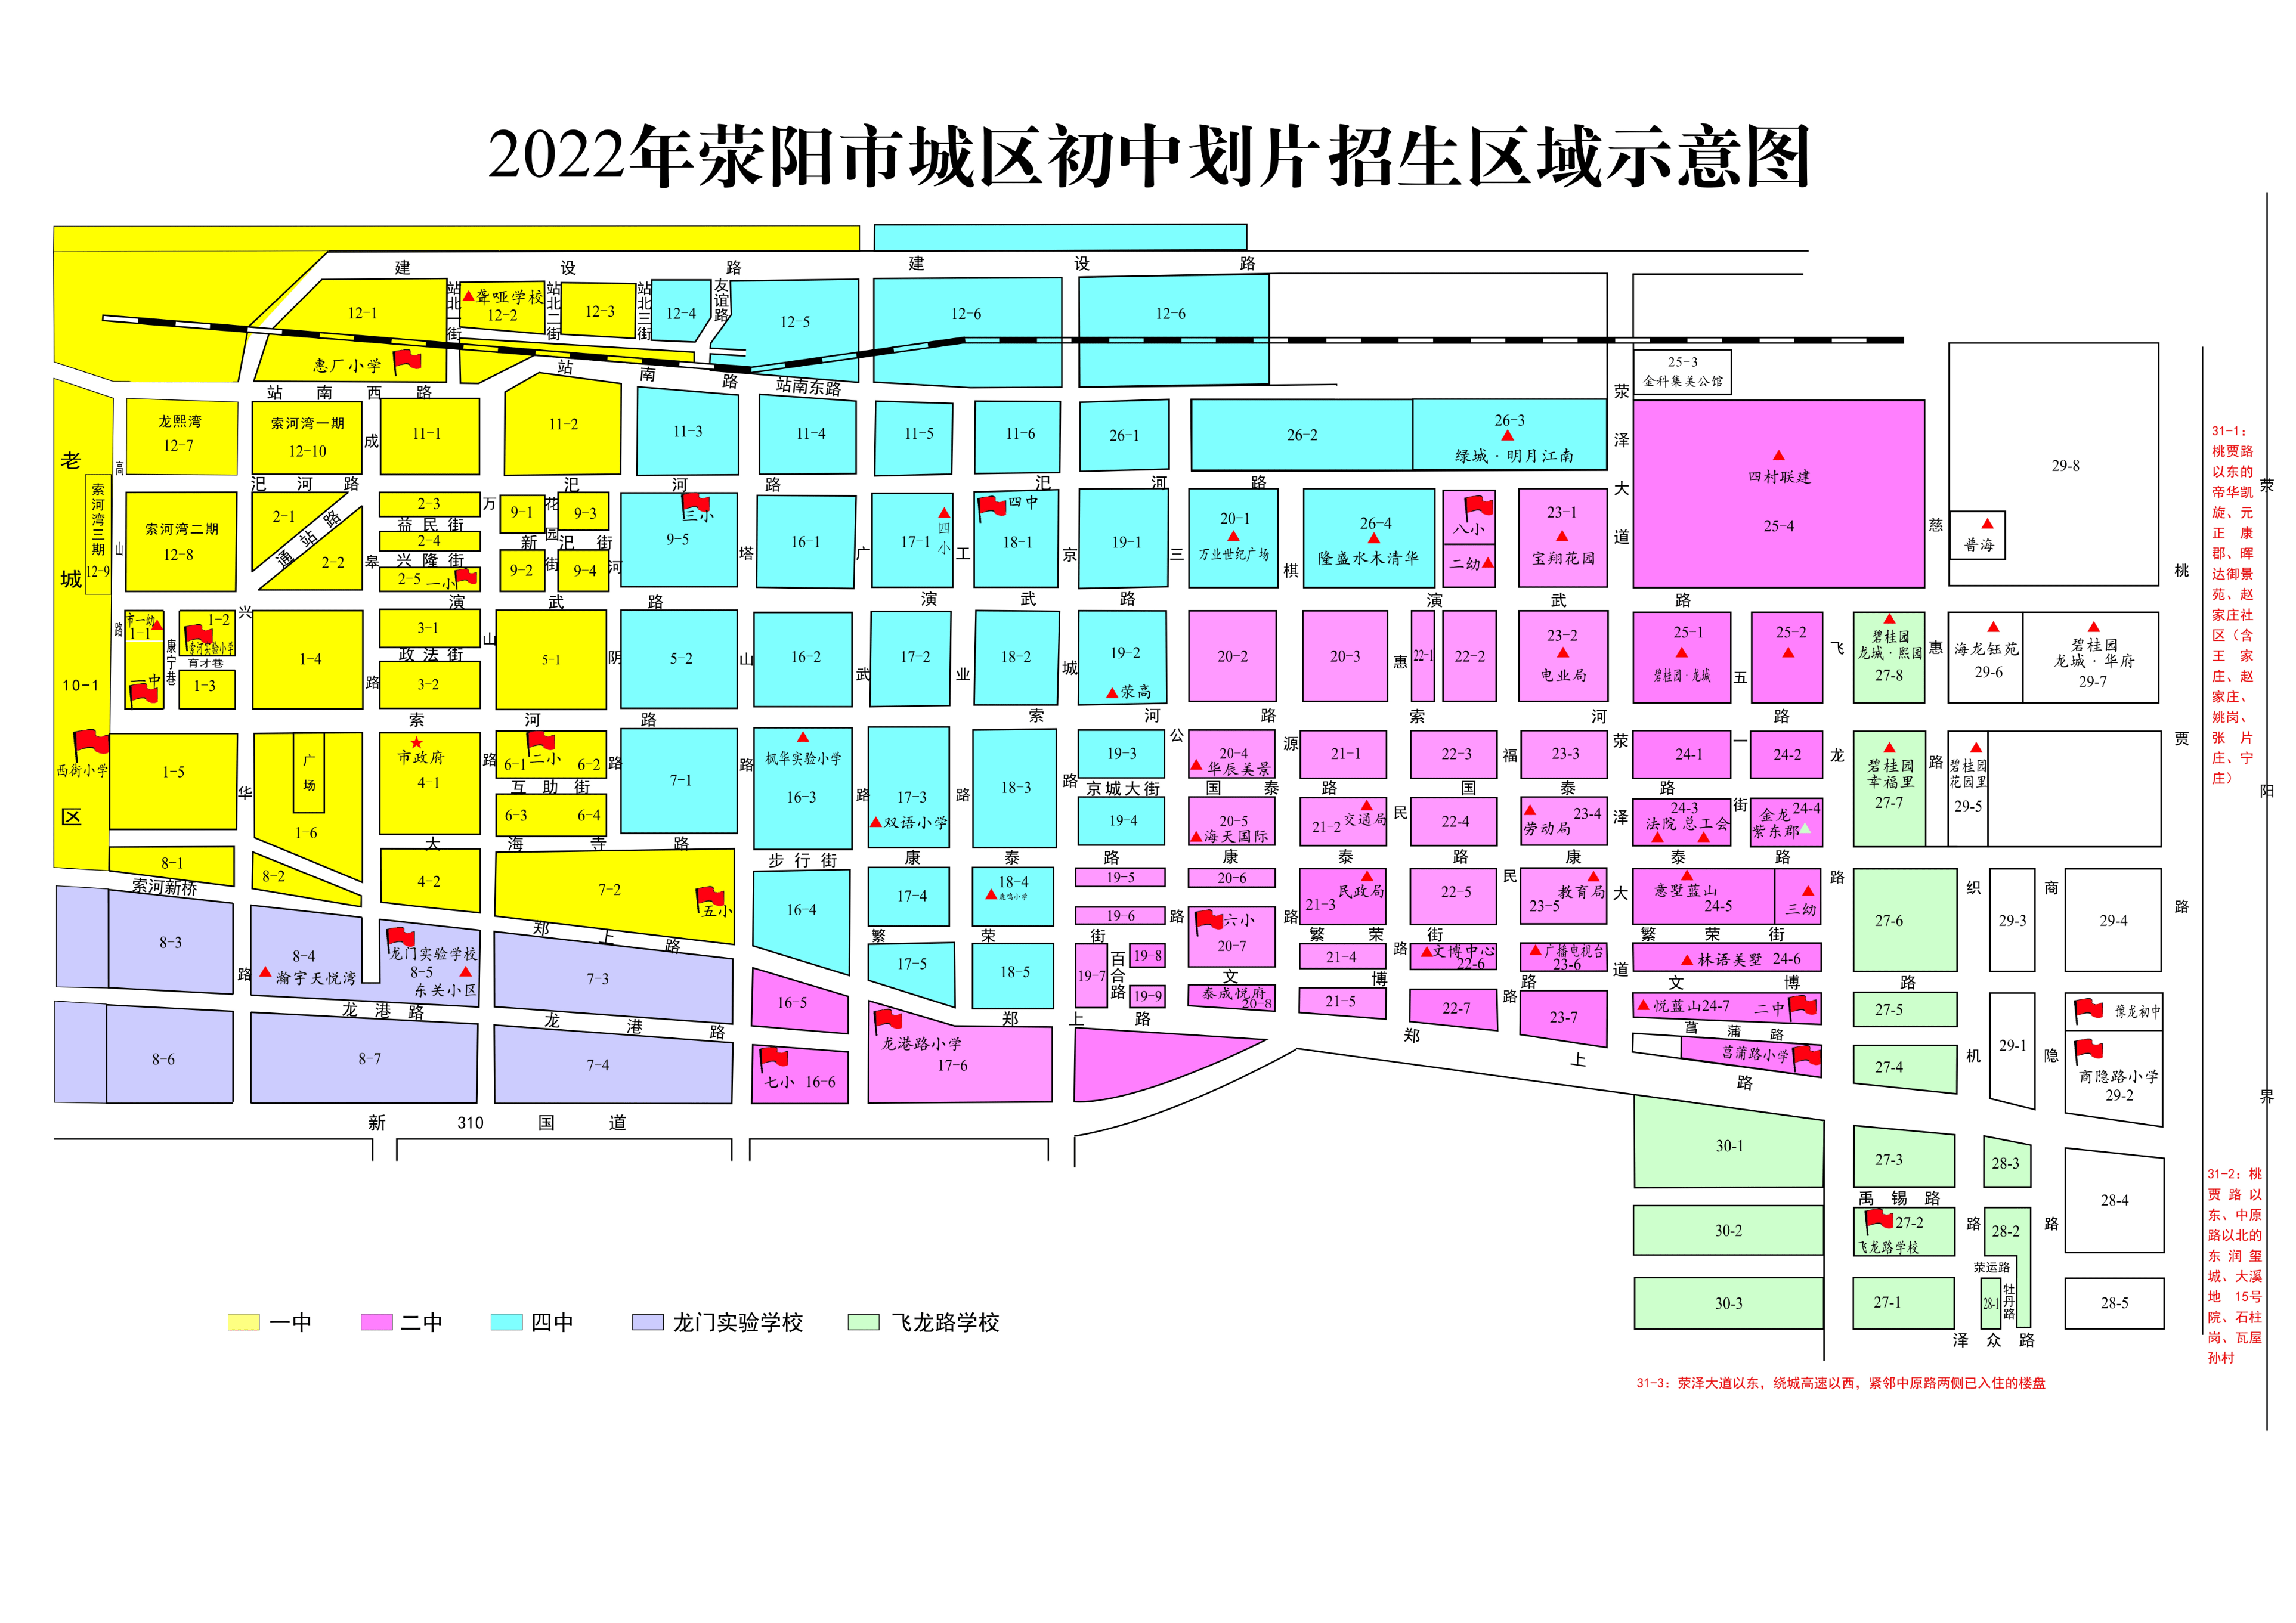 荥阳市区域划分图片